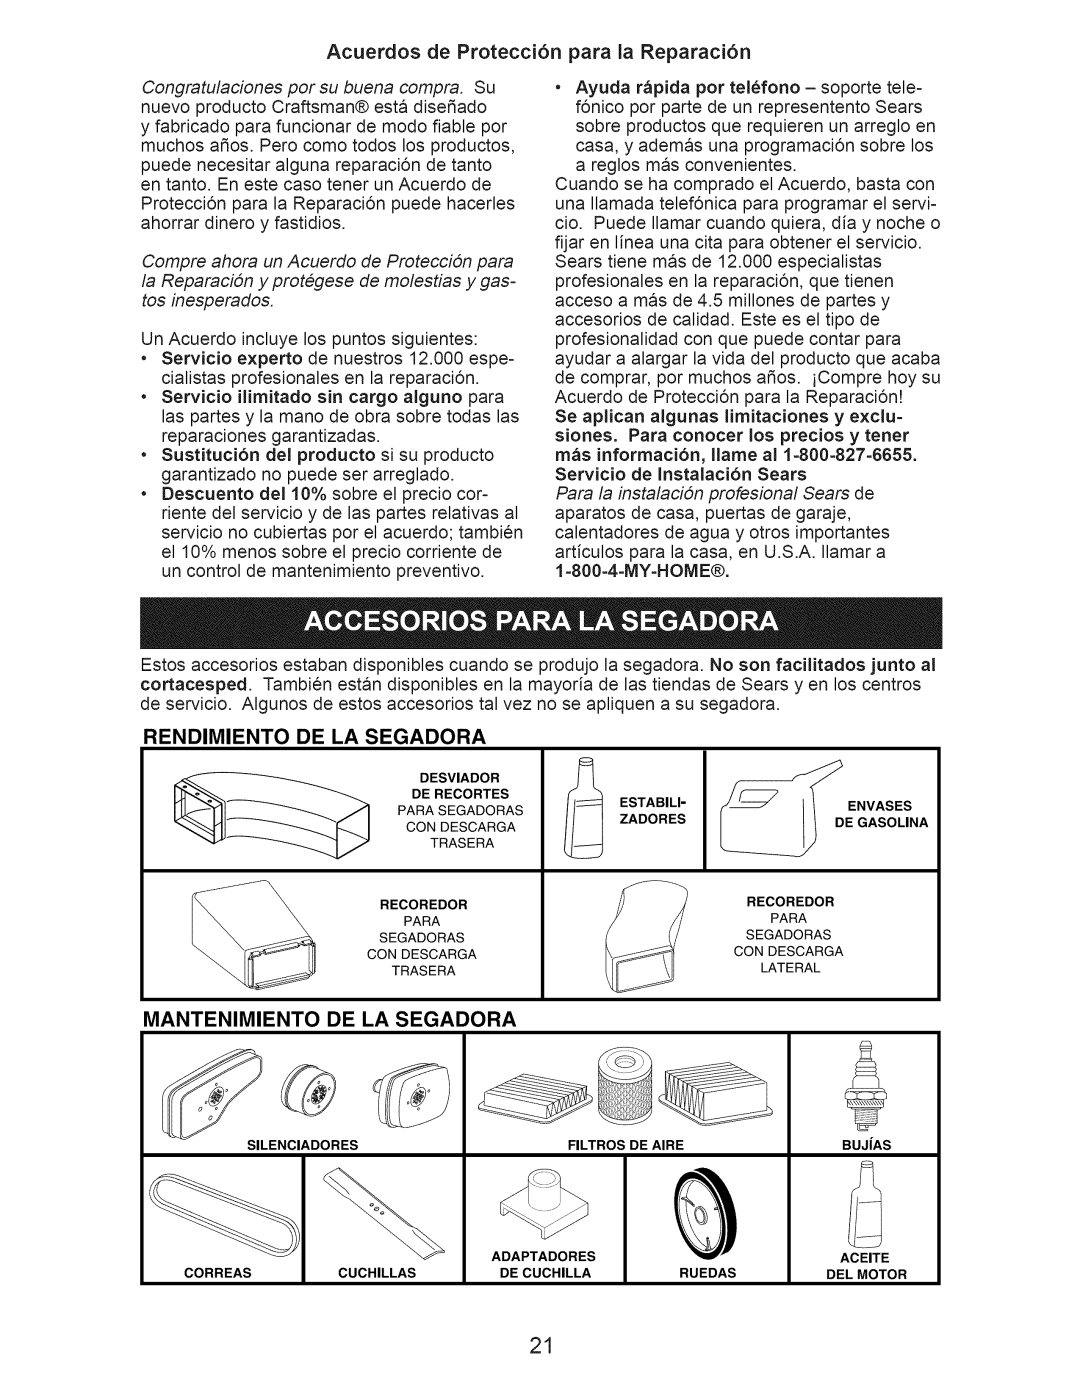 Craftsman 917.389060 manual Acuerdos de Protecci6n para la Reparaci6n, Rendimiento, De La Segadora, Mantenimiento 